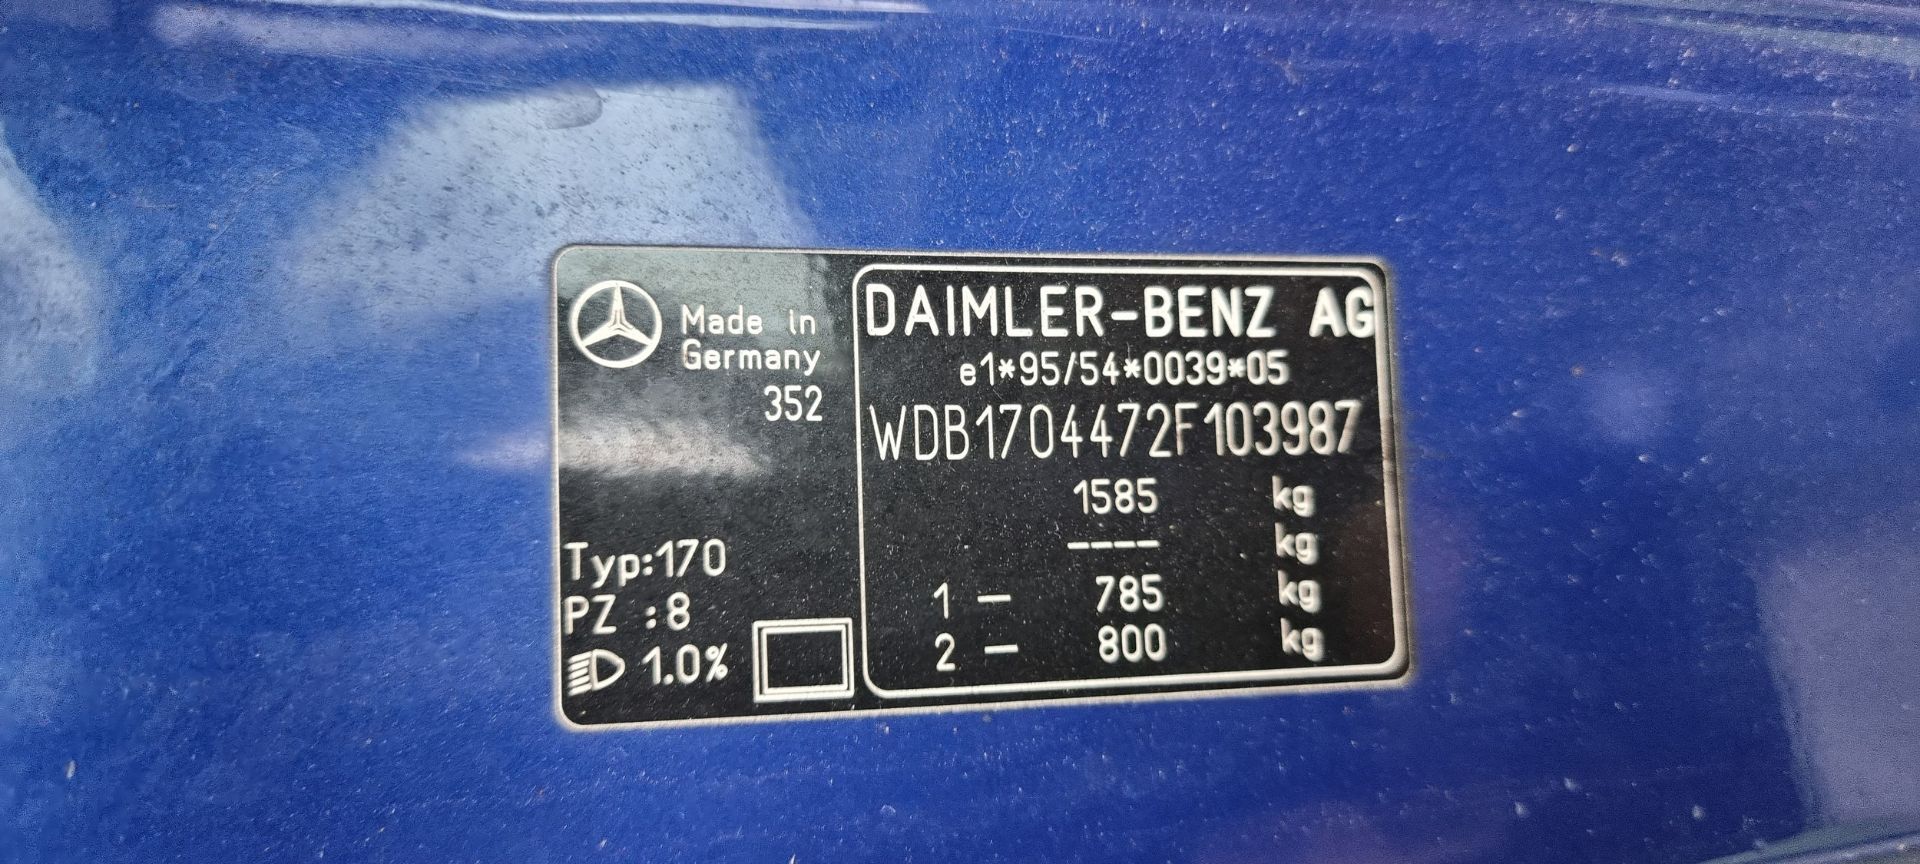 1999 Mercedes Benz SLK 230 Kompressor, 2298cc. Registration number S488 EGU. Chassis number - Image 18 of 18